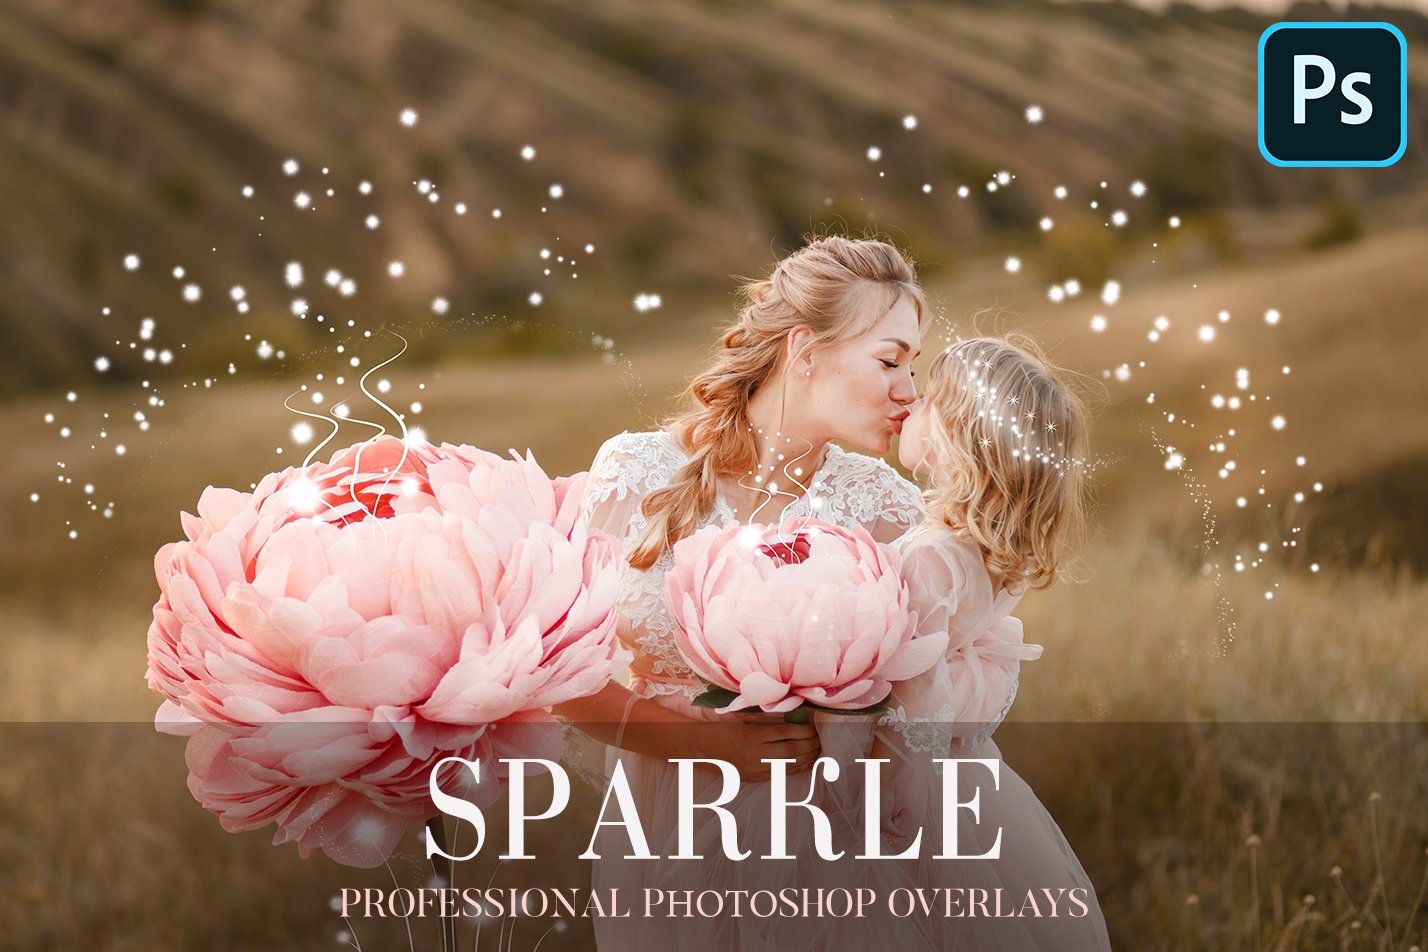 Sparkle Overlays Photoshopcover image.